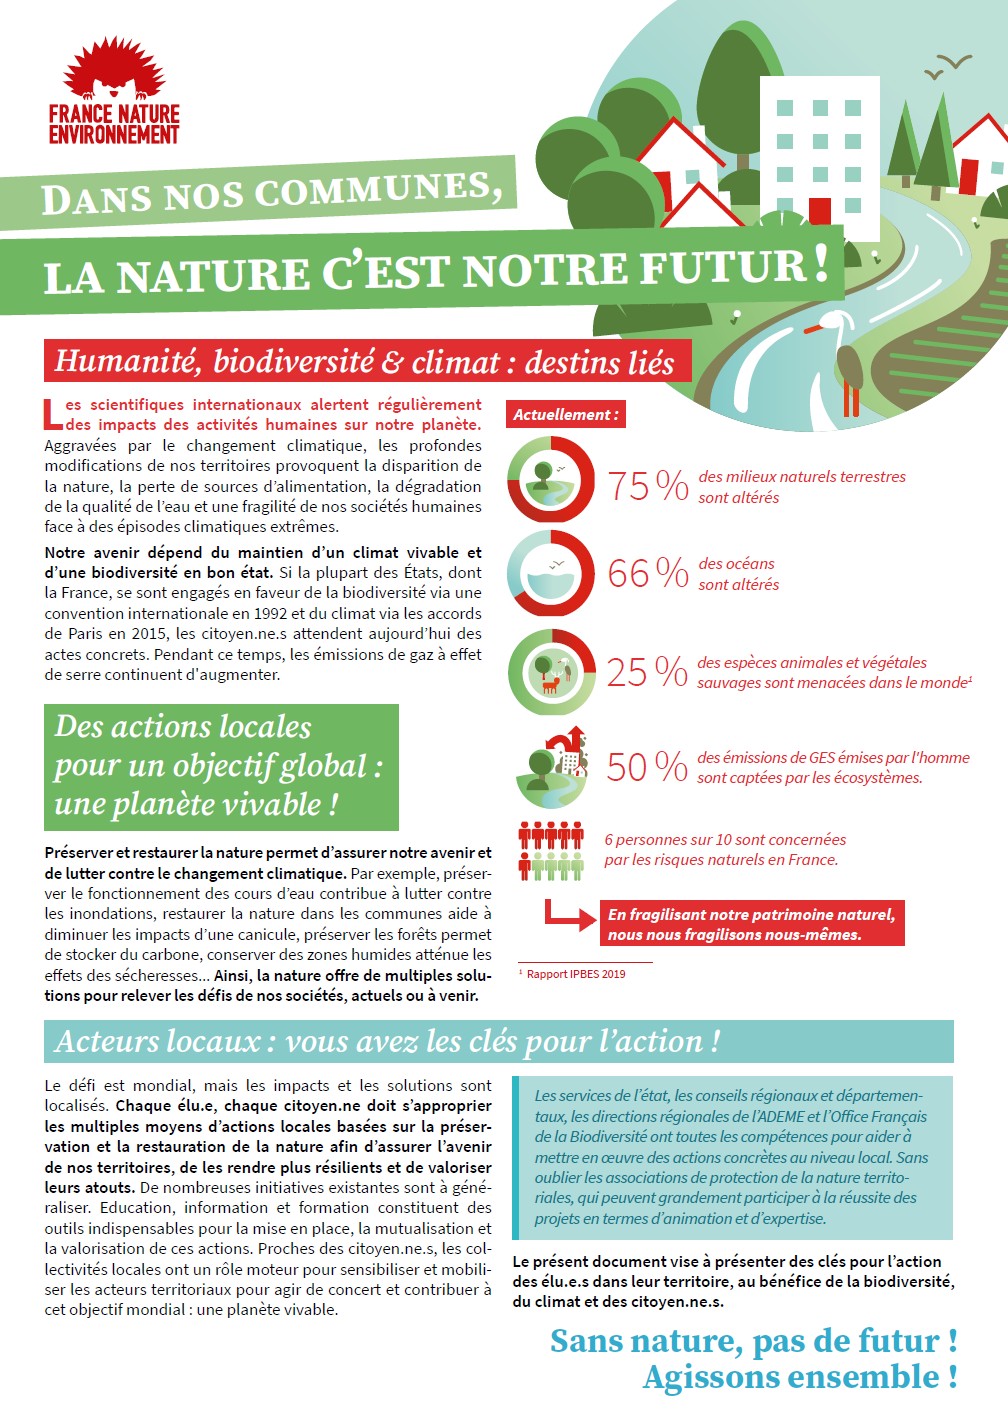 Retrouvez en ligne sur le site de France nature environnement, sept fiches thématiques proposant des solutions simples, efficaces et durables à mettre en œuvre par les municipalités avec les habitants